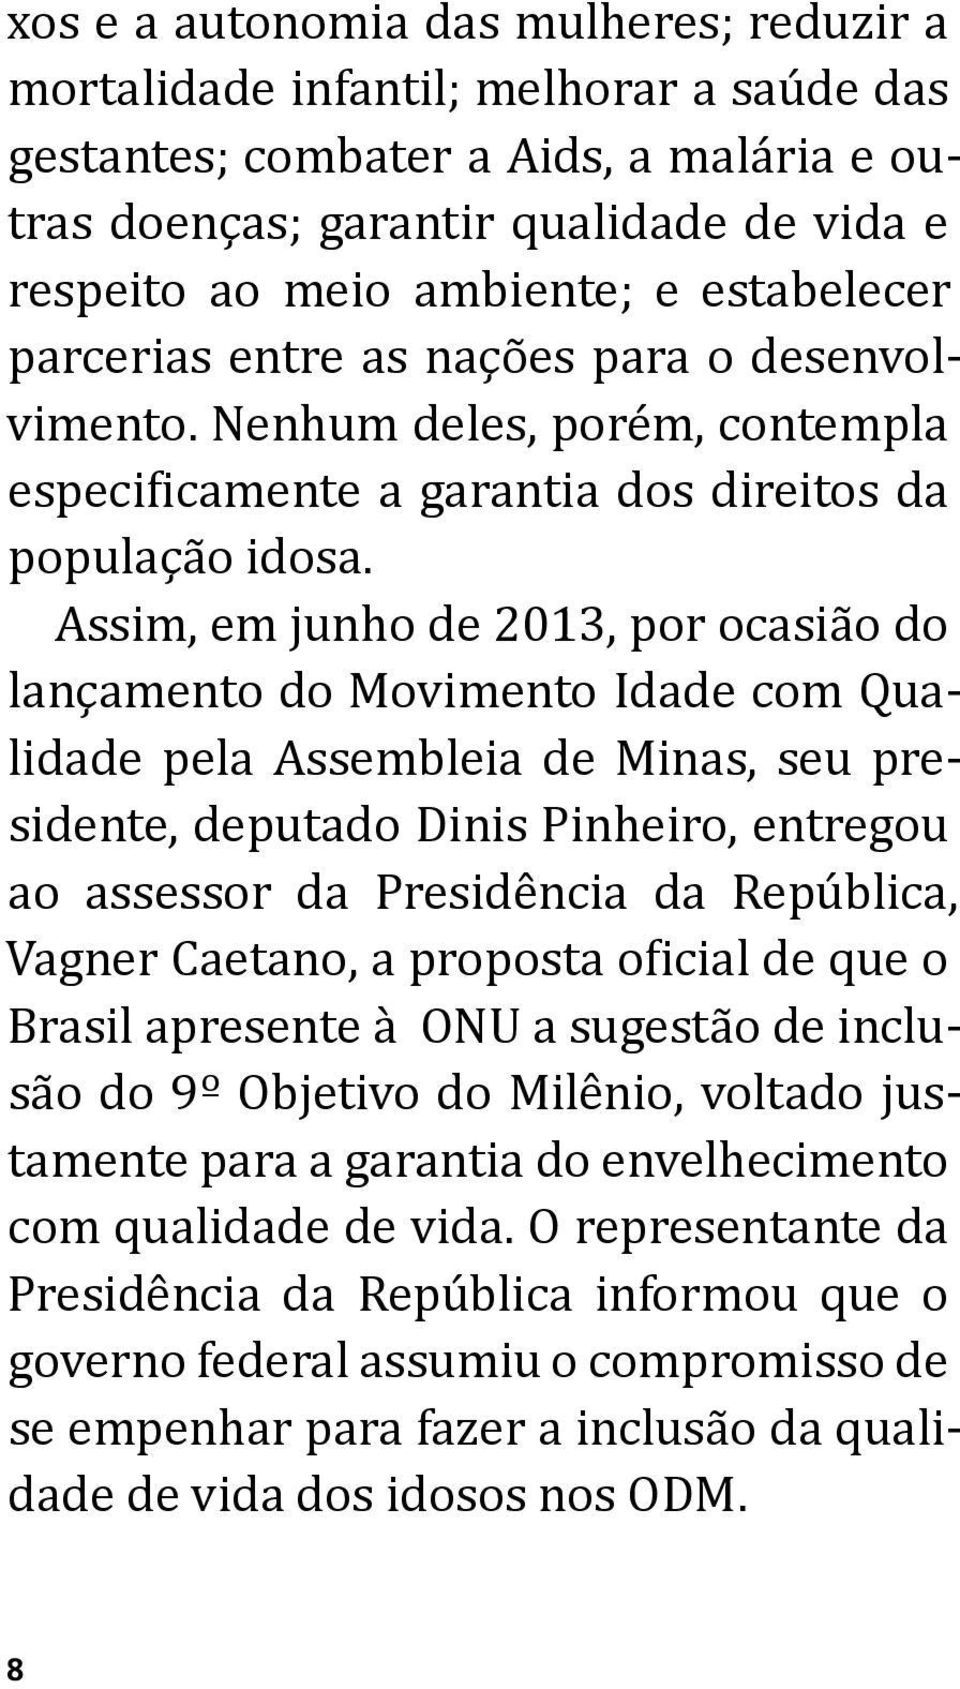 Assim, em junho de 2013, por ocasião do lançamento do Movimento Idade com Qualidade pela Assembleia de Minas, seu presidente, deputado Dinis Pinheiro, entregou ao assessor da Presidência da